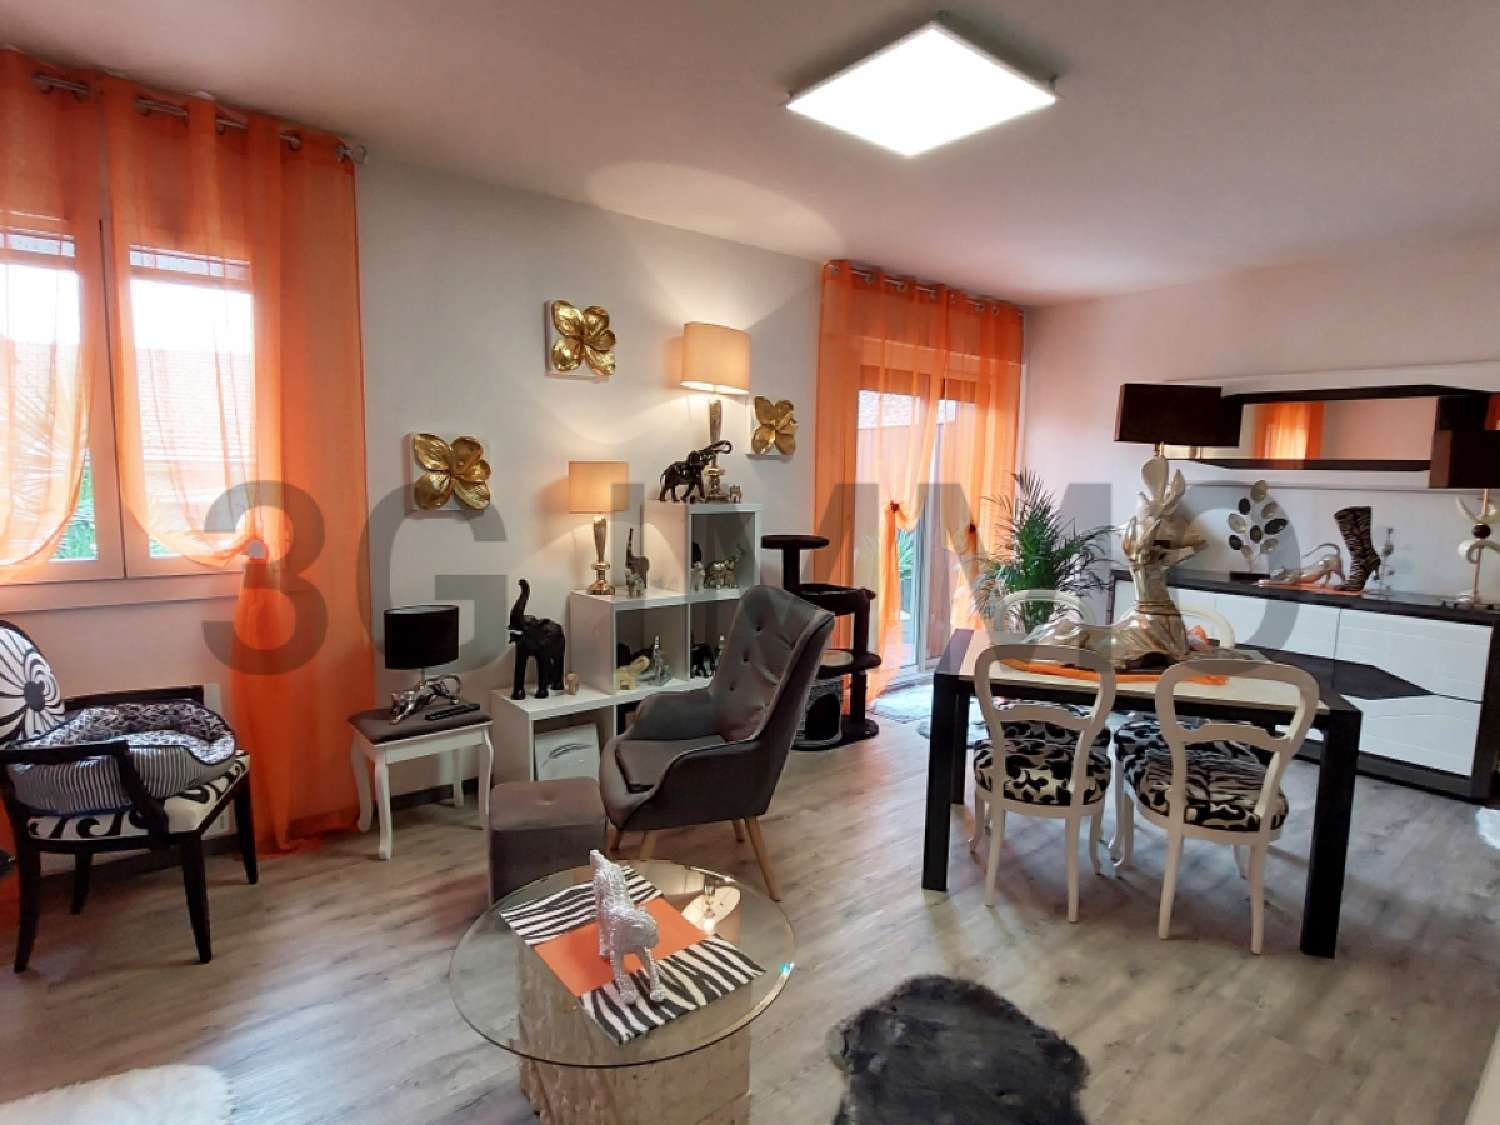  à vendre appartement Montbazens Aveyron 3